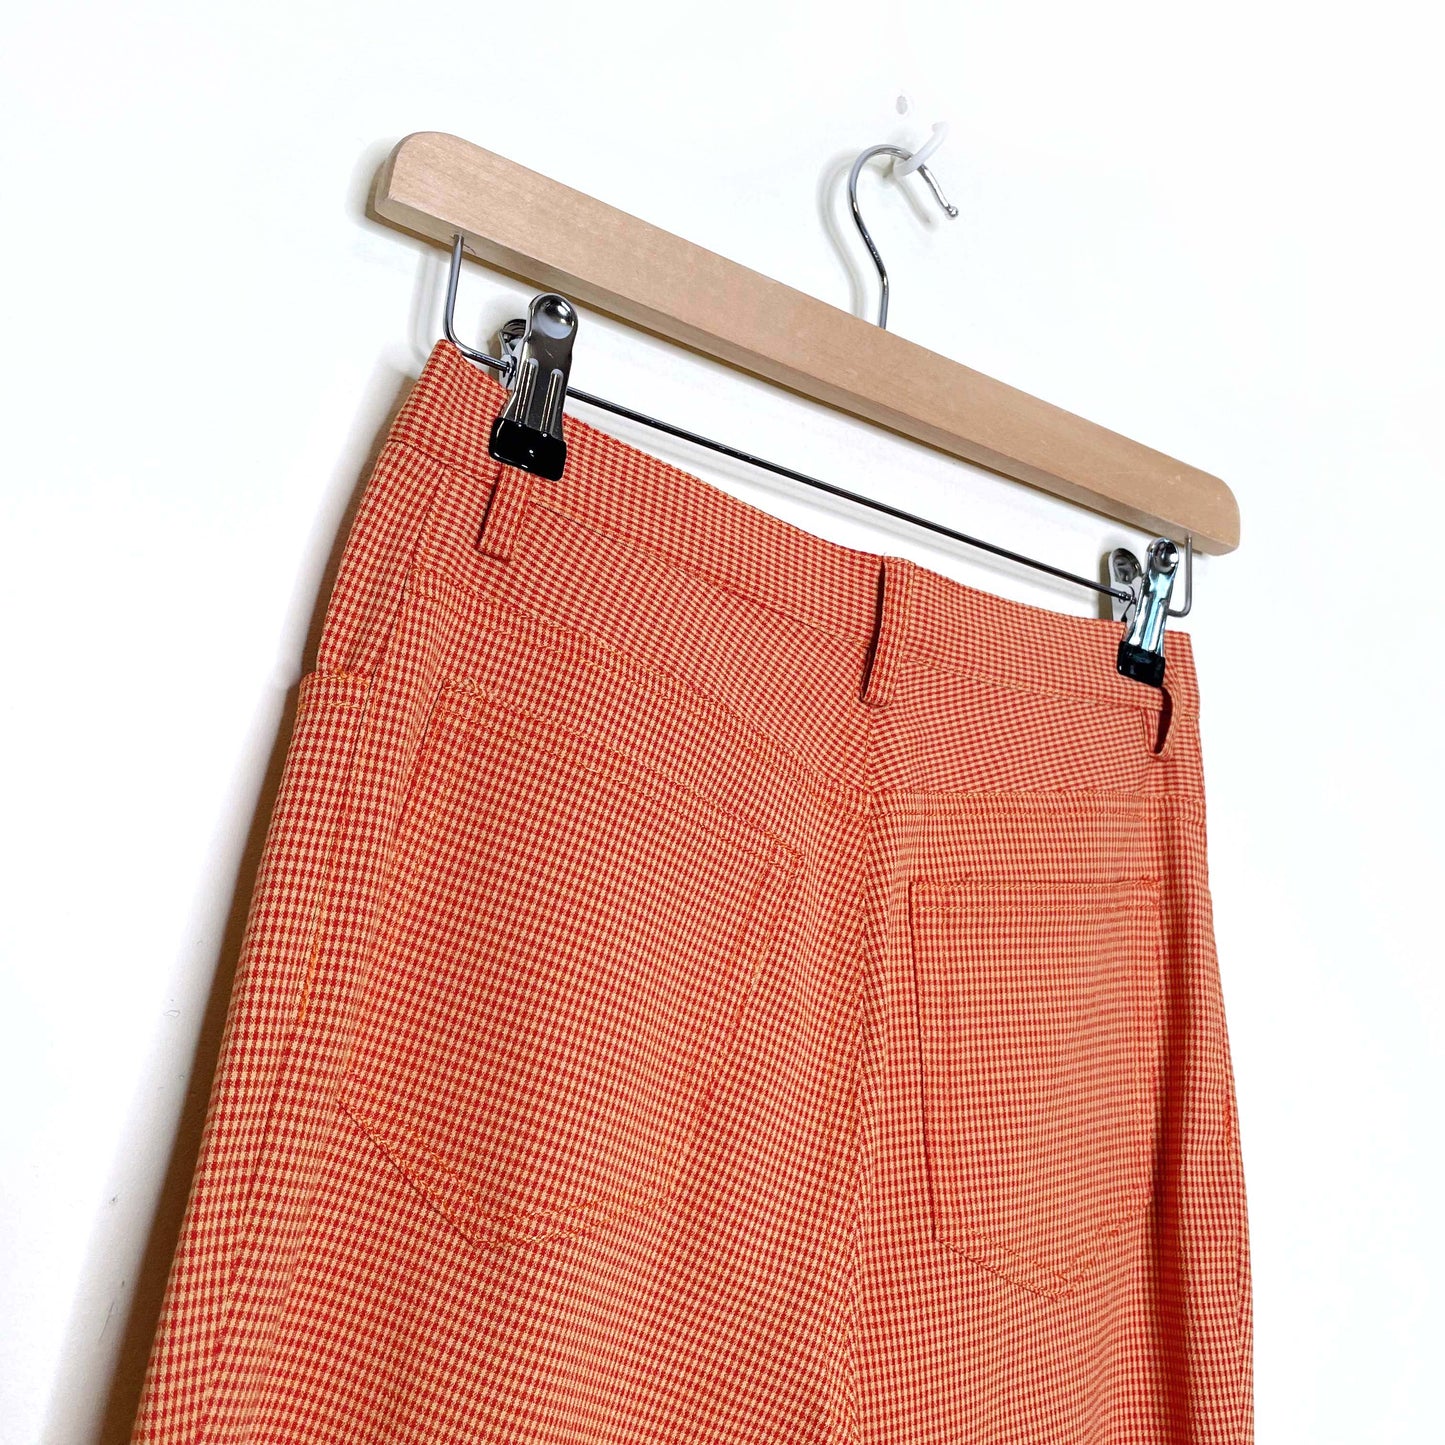 vintage 70s bonappétite orange gingham plaid flare pants - size 1